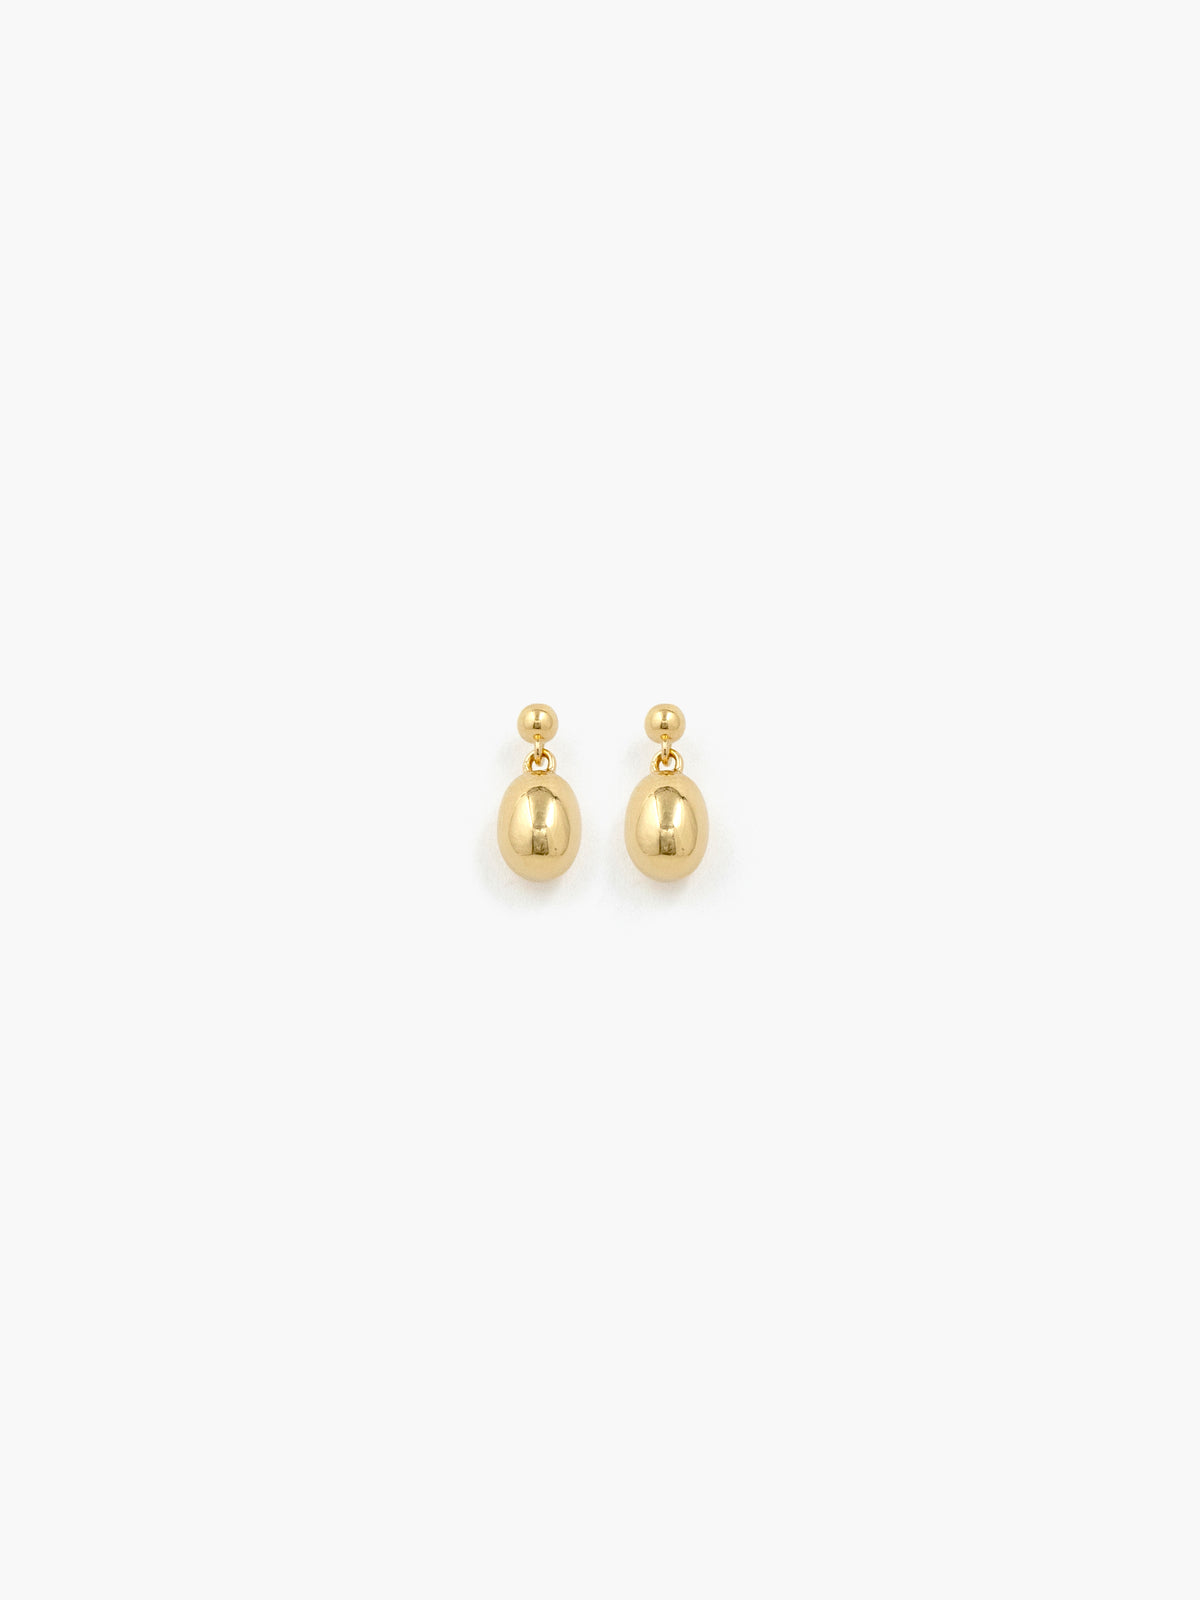 Reflection Mini Earrings - GOLD / RAGBAG (リフレクションミニイヤリング - ゴールド / ラグバッグ) - ICHI GALLERY | ジュエリー ブランド デンマーク 女性  小物 アクセサリー ギフト 贈り物 プレゼント